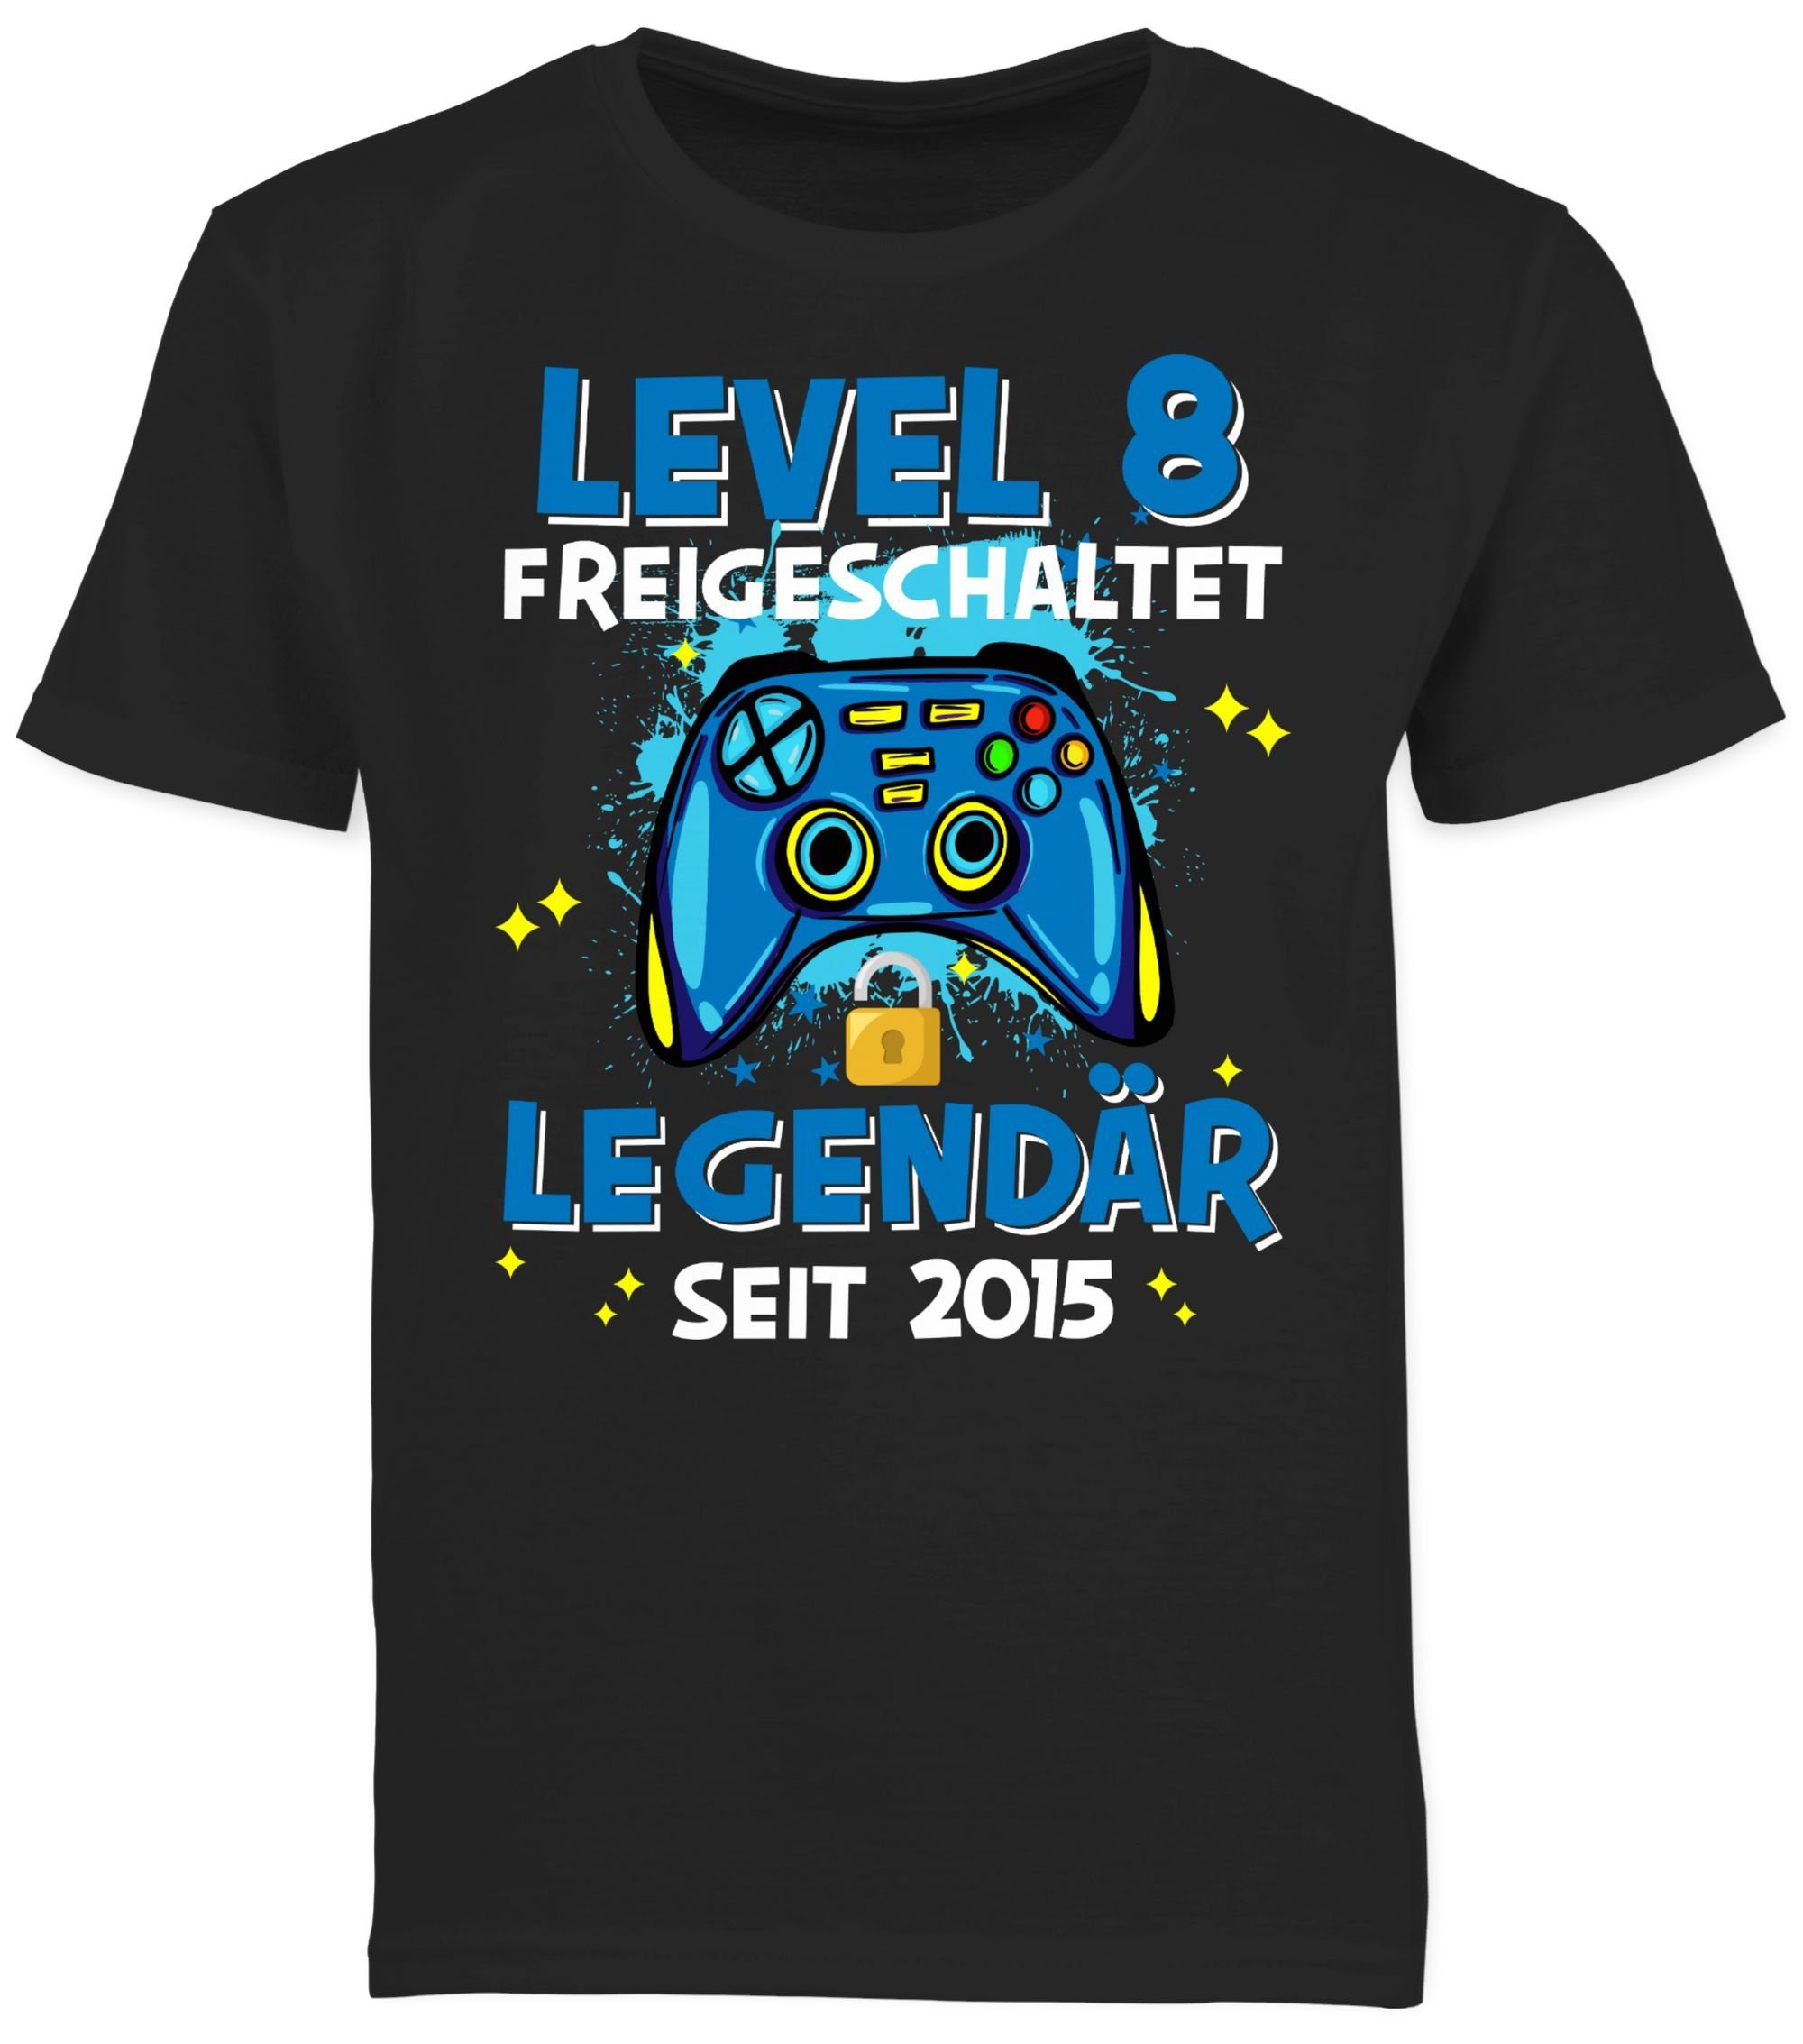 Shirtracer T-Shirt Level 8 freigeschaltet 03 8. 2015 Legendär Geburtstag seit Schwarz